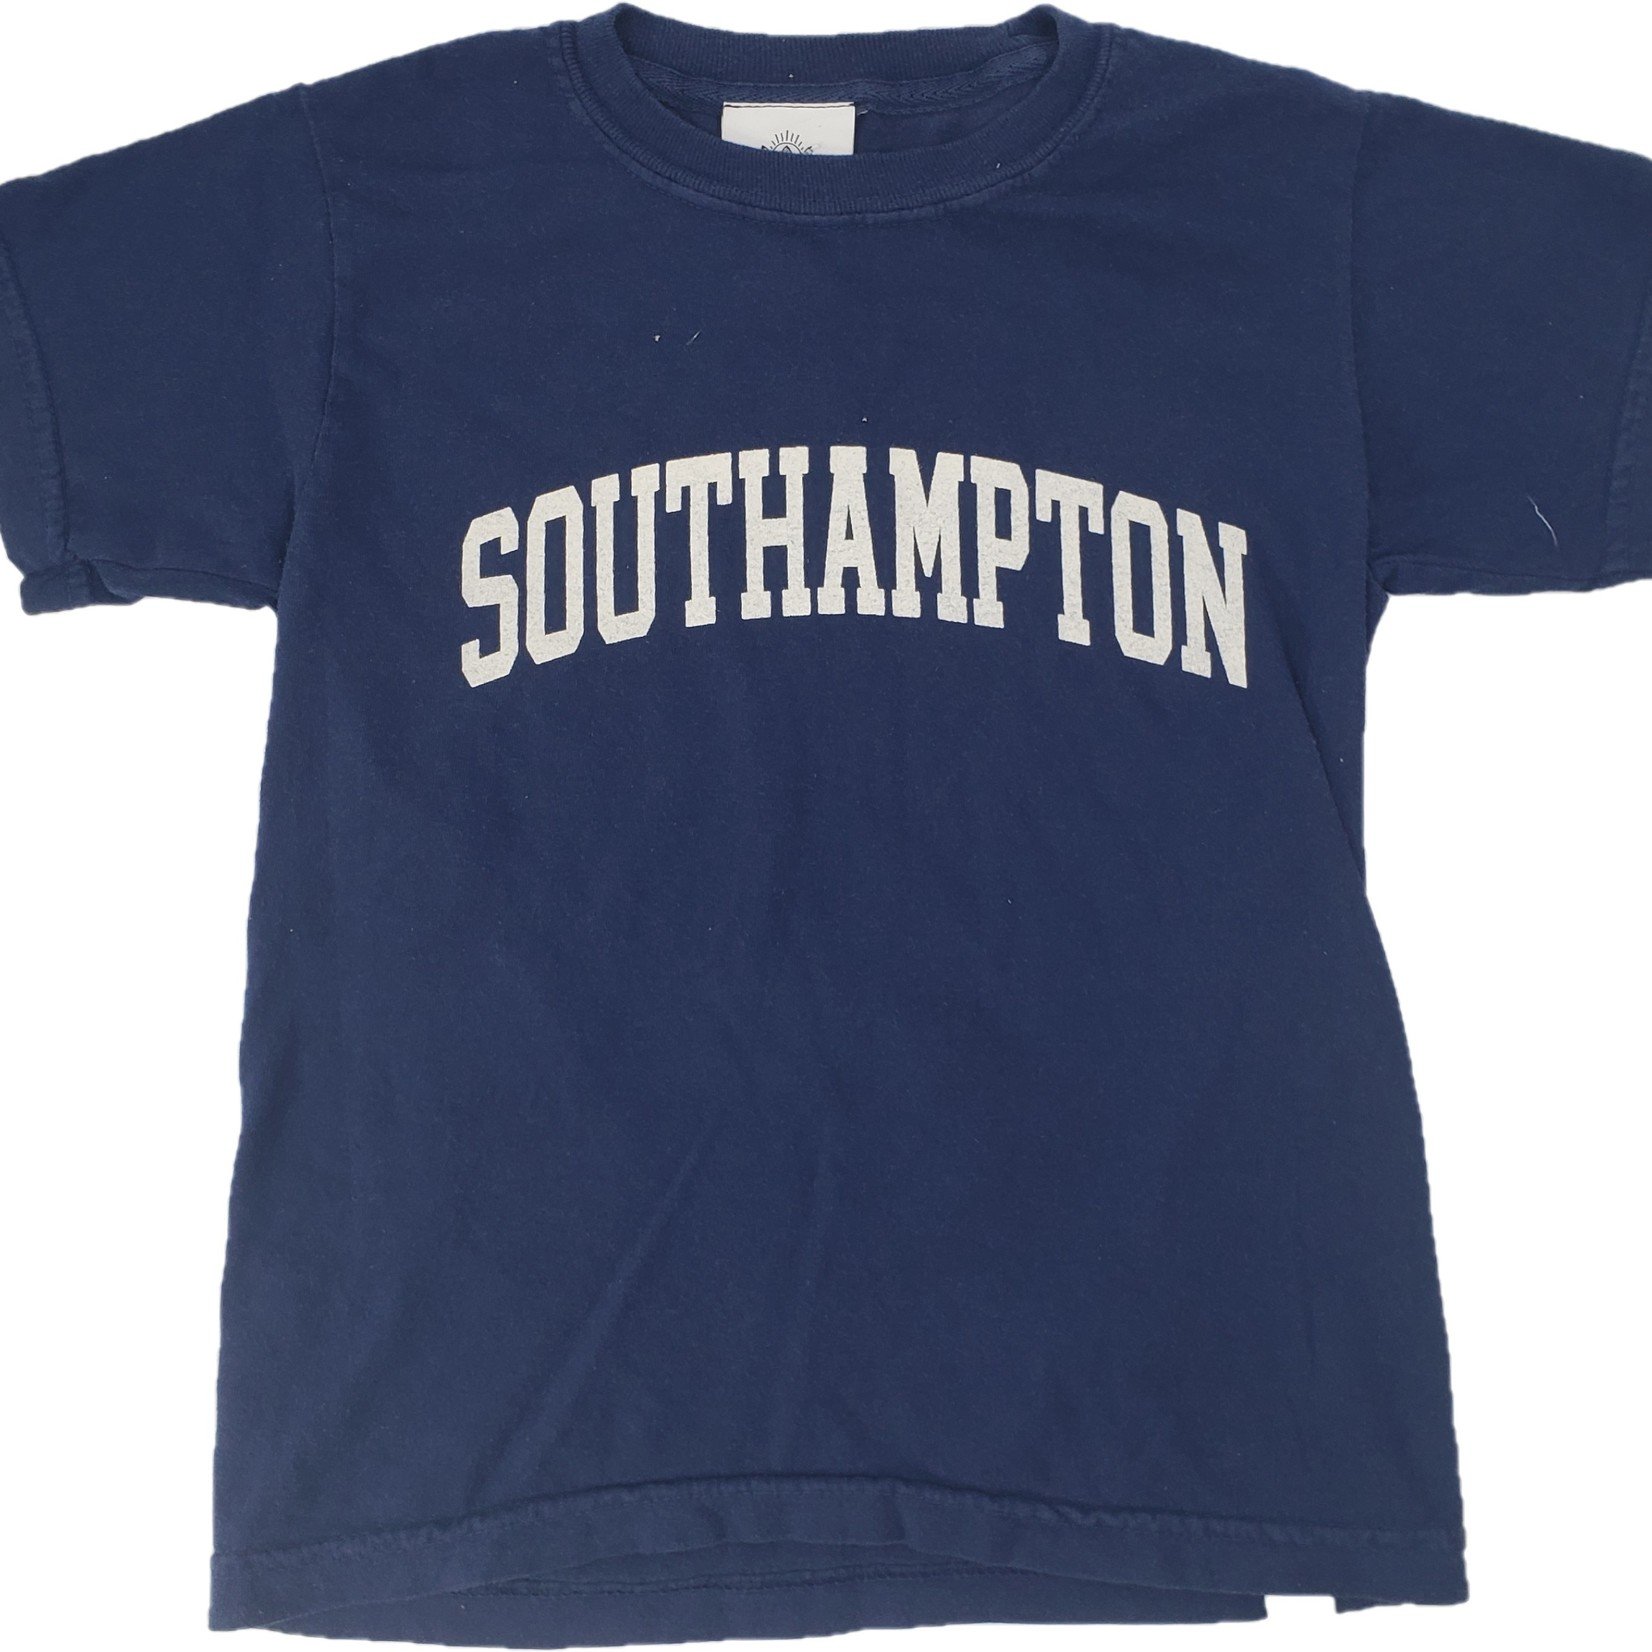 Southampton Southampton Kids Tee